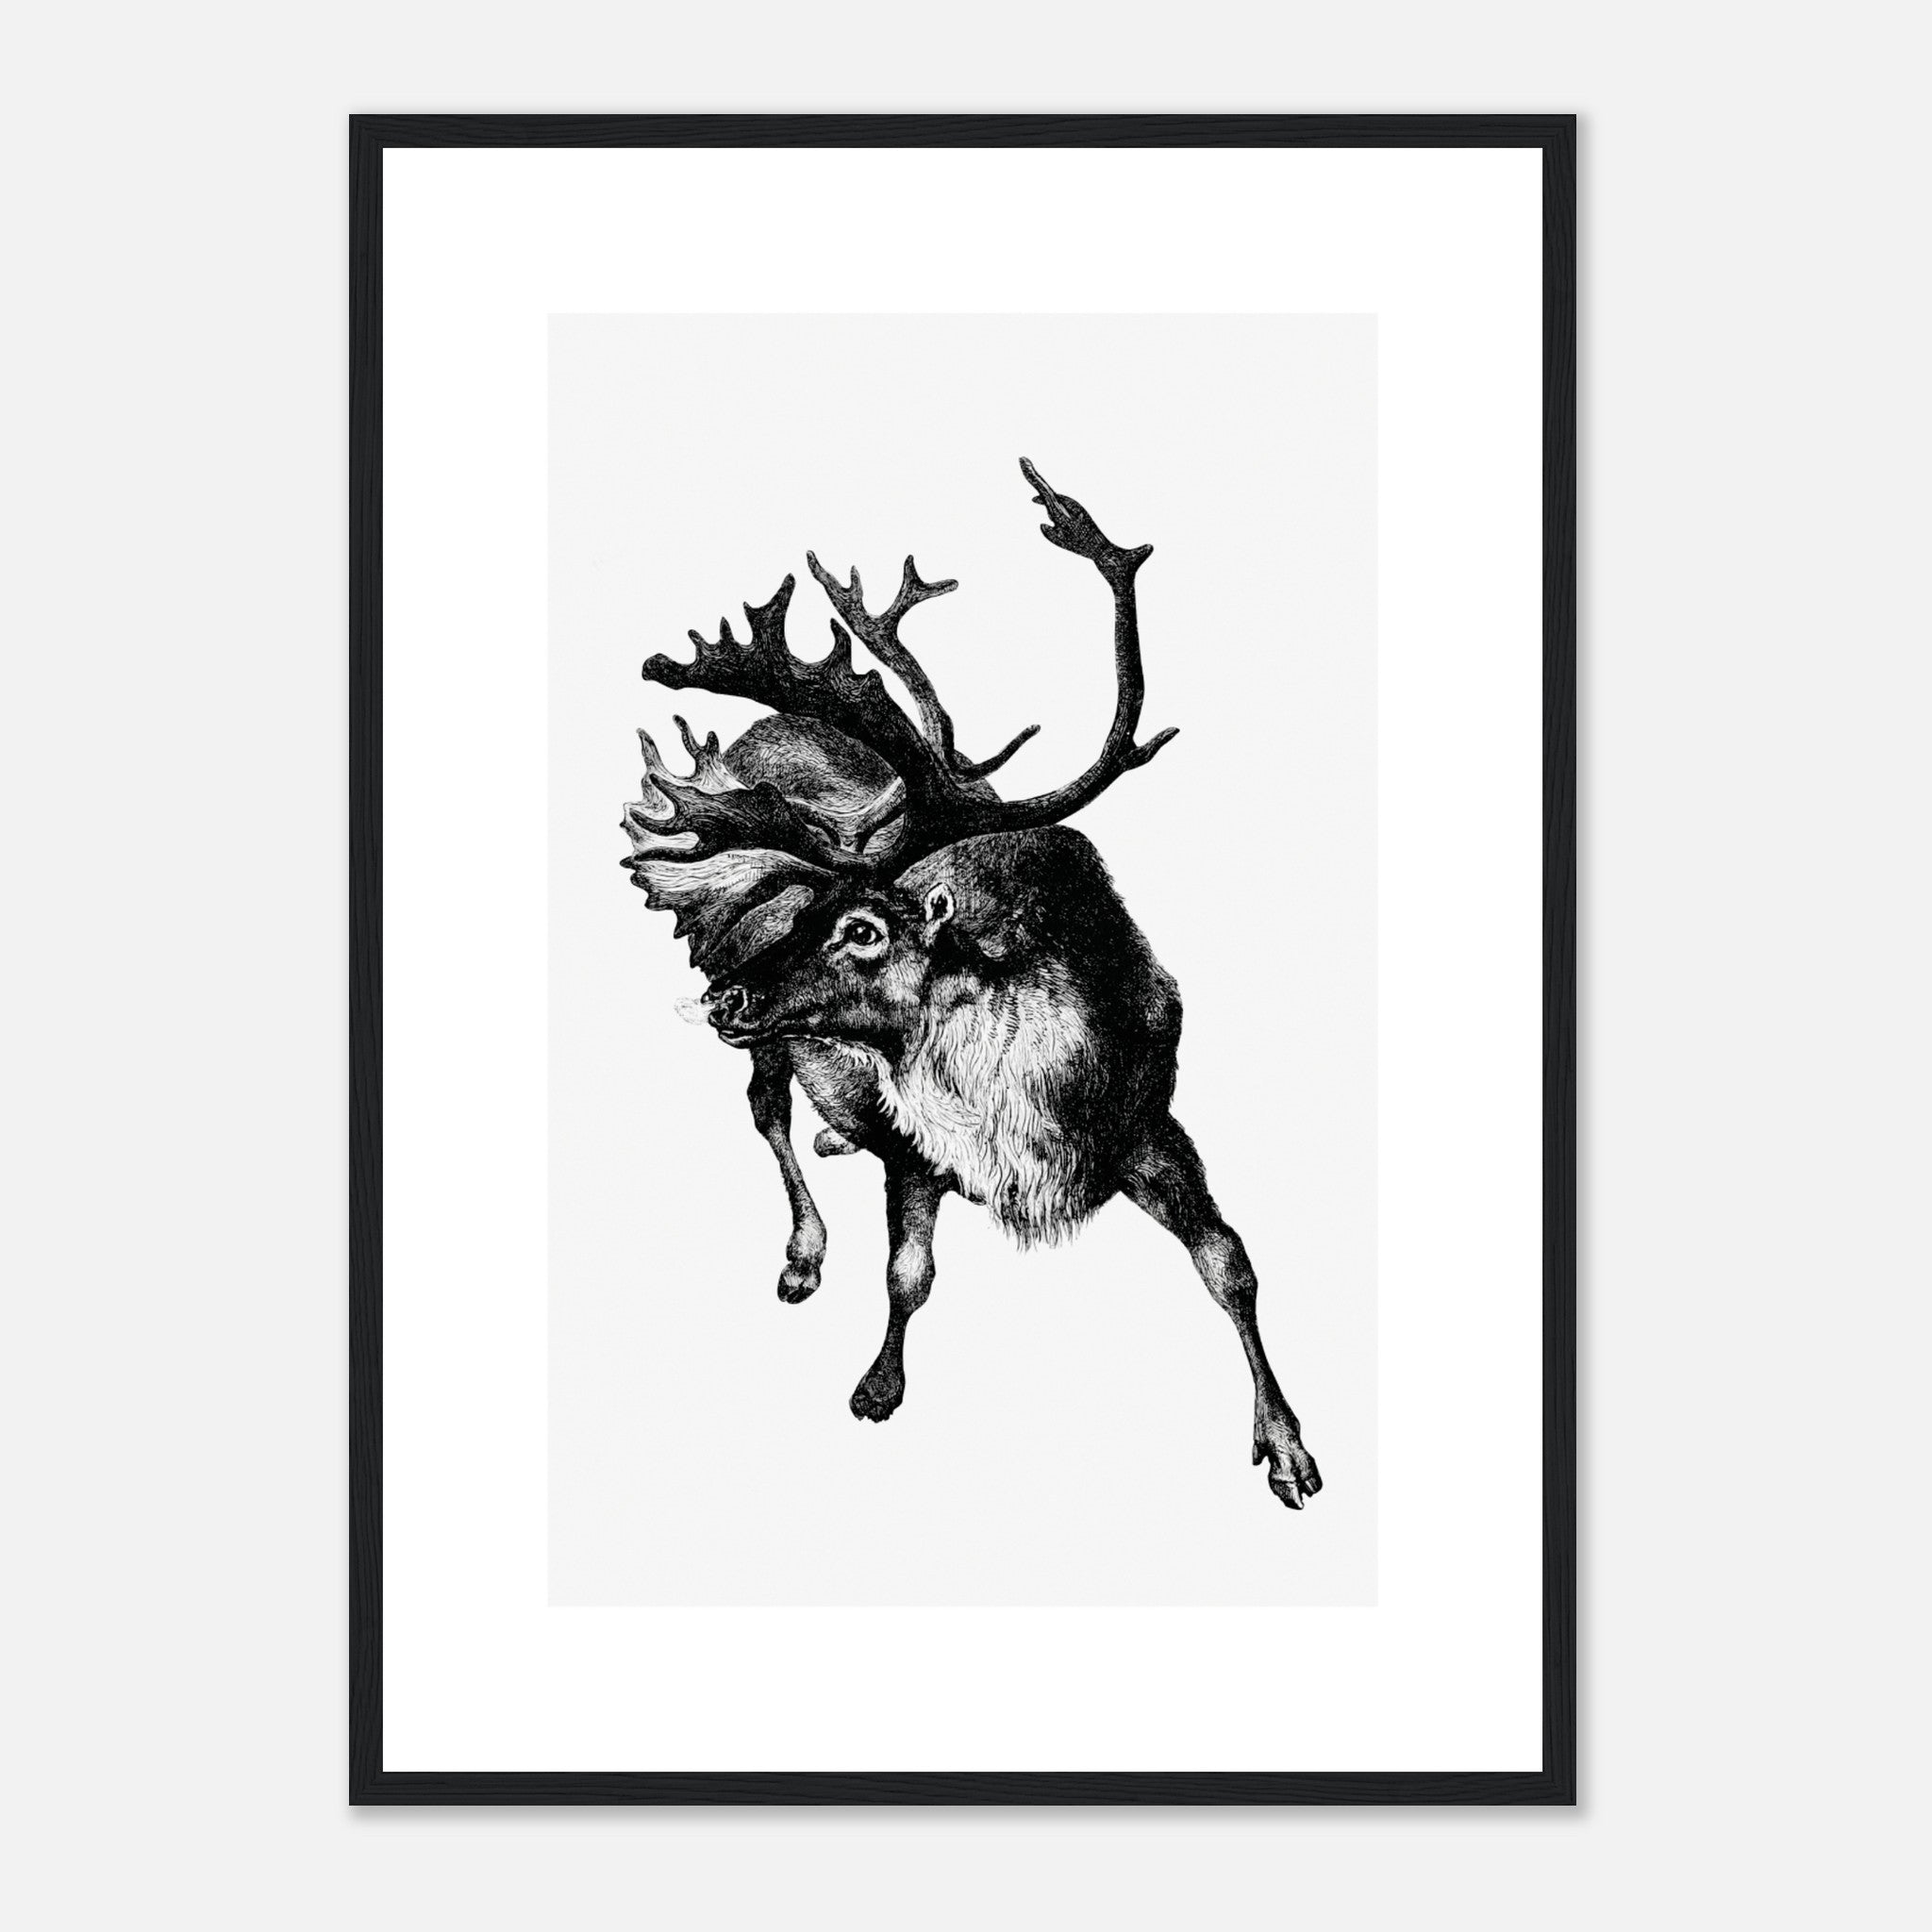 Vintage Reindeer Etching Illustration Poster